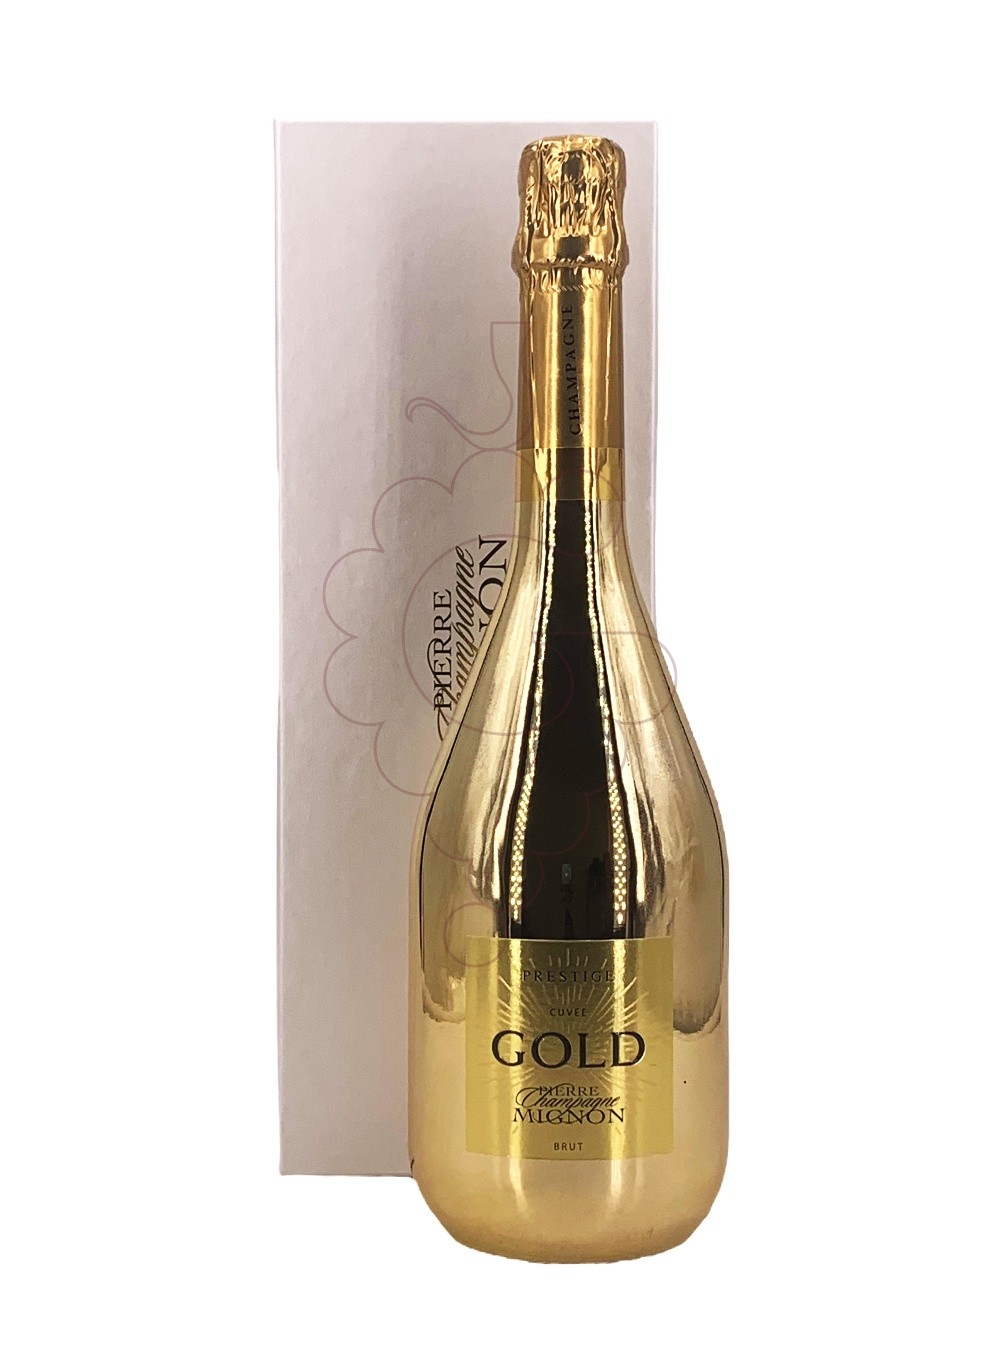 Photo Pierre Mignon Cuvée Gold sparkling wine